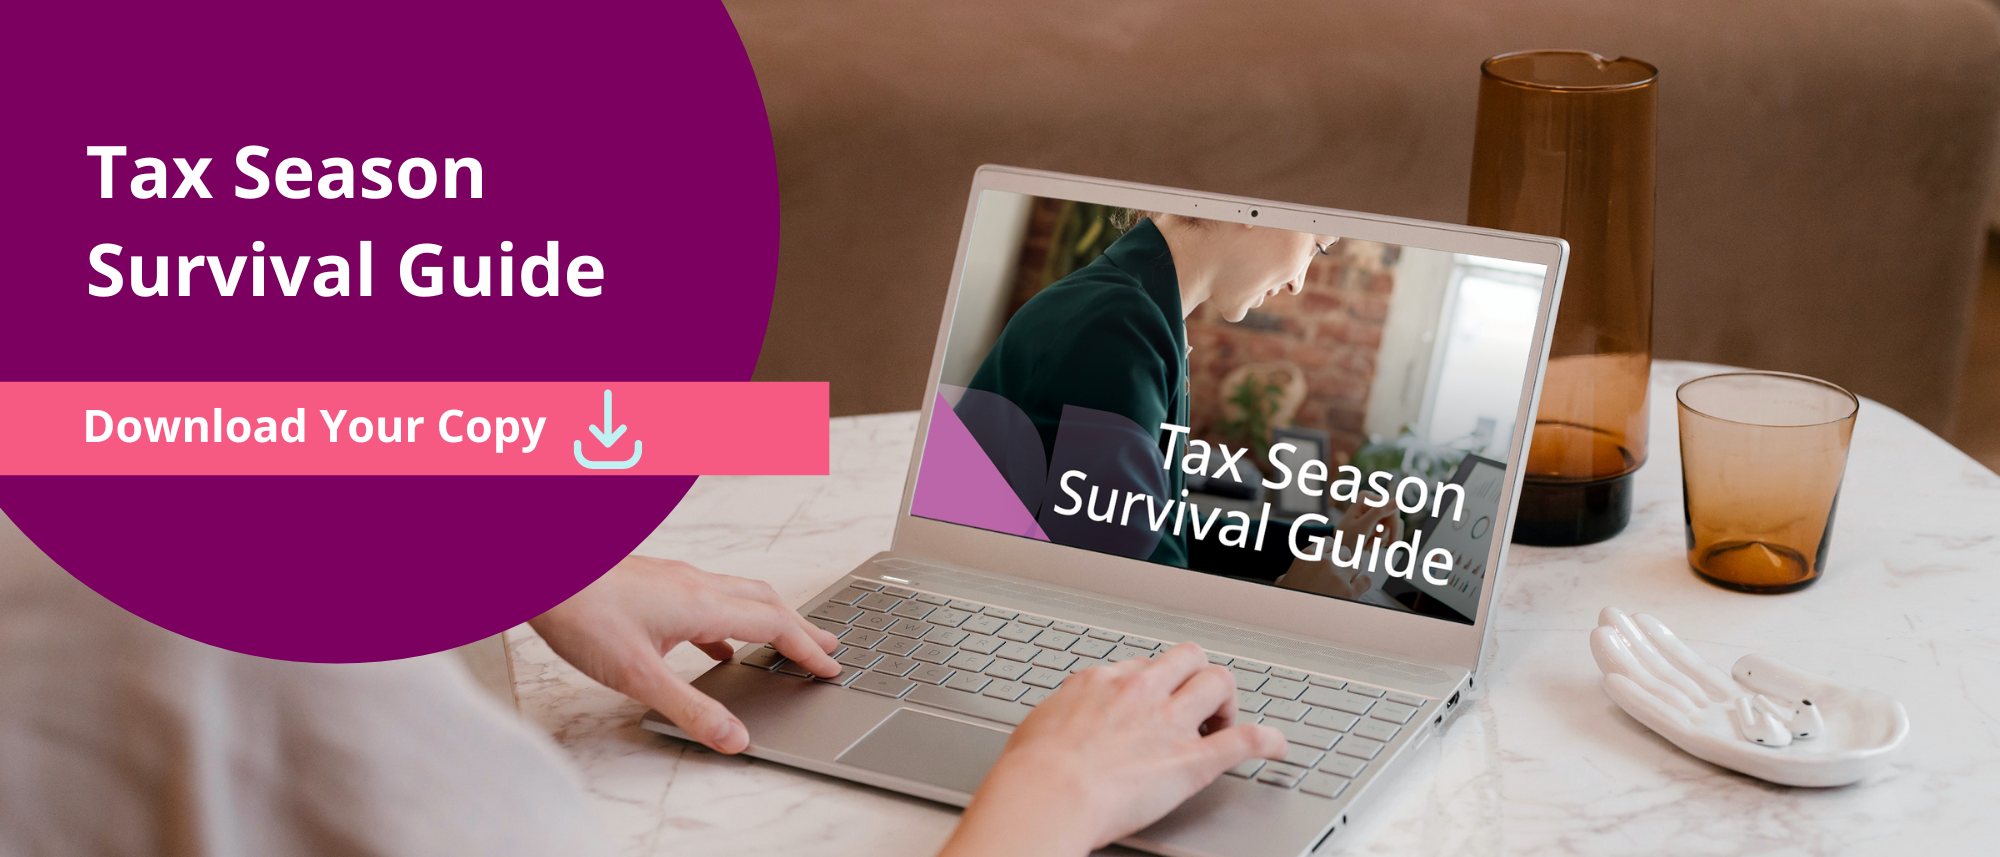 Tax Season Survival Guide Banner